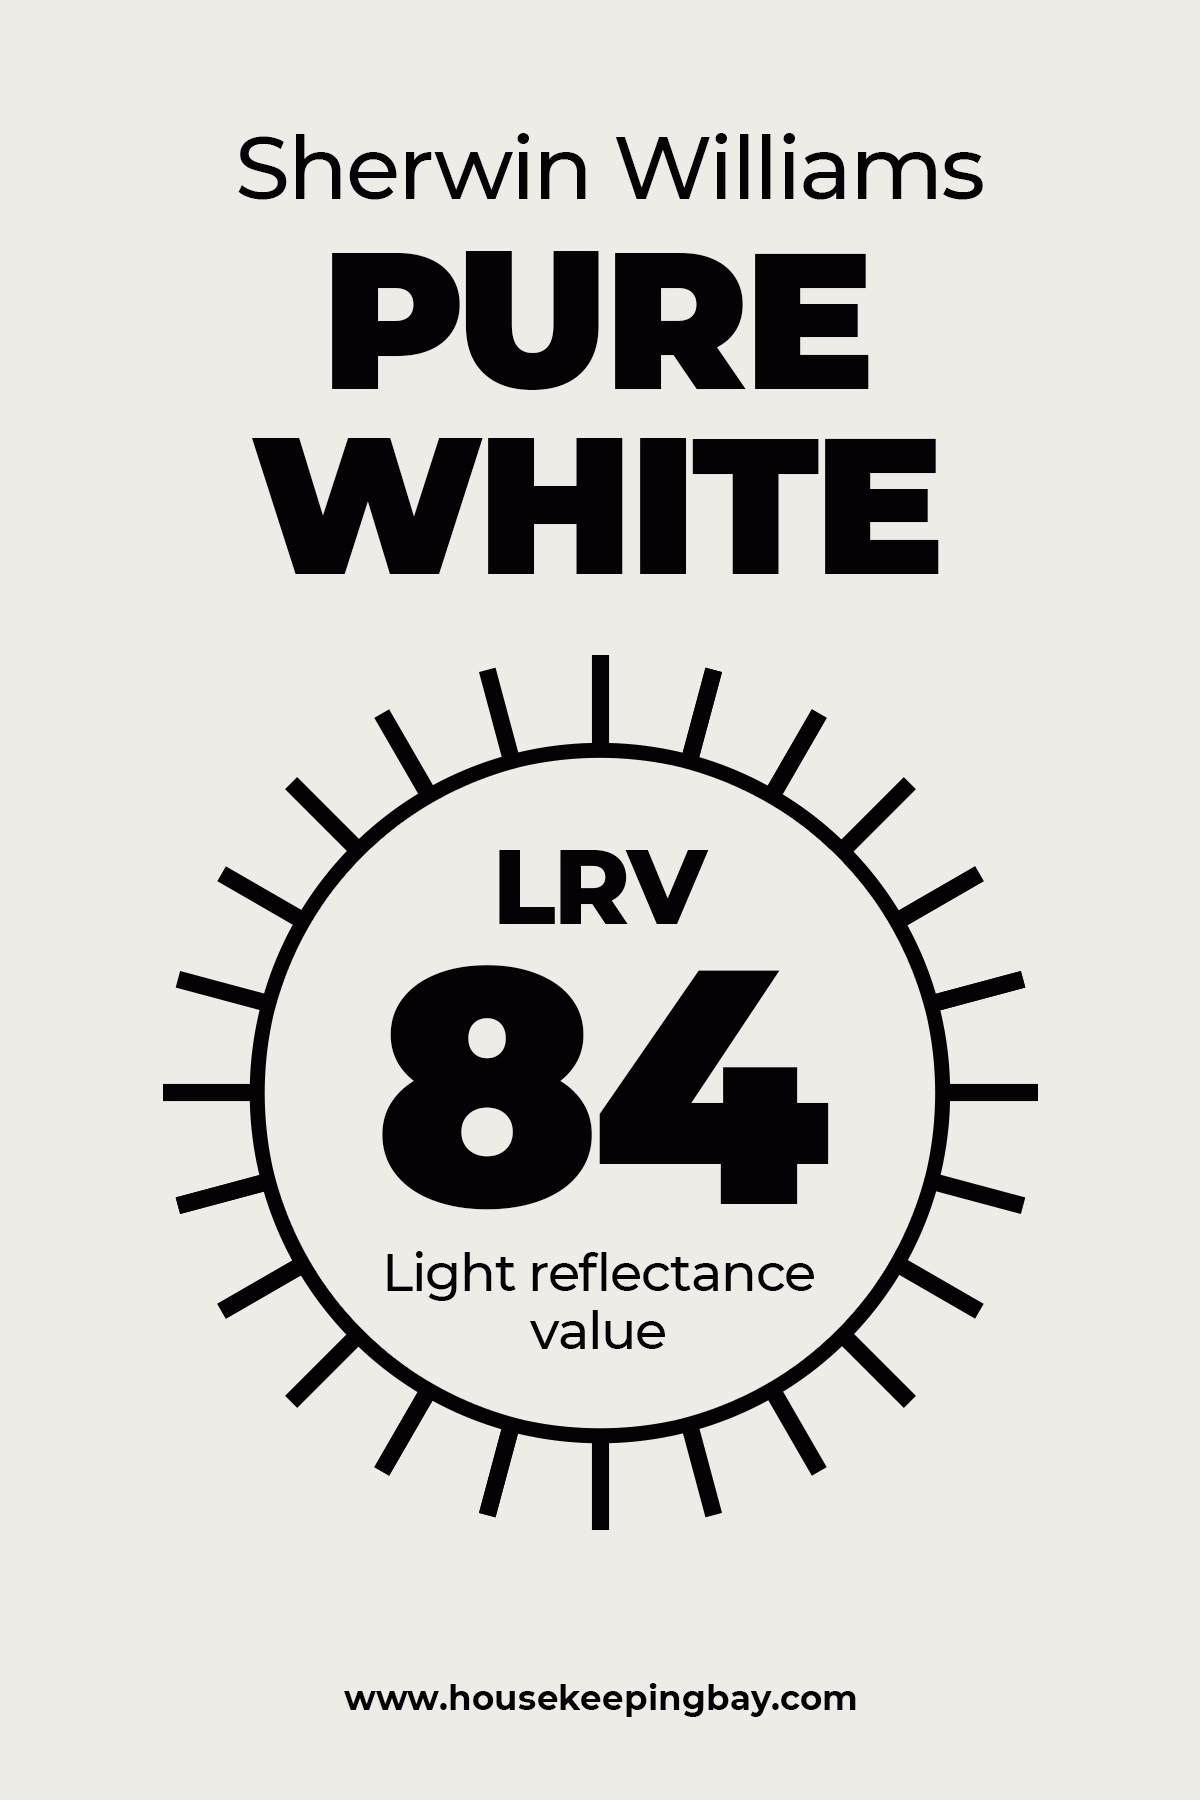 Sherwin Williams Pure White LRV 84